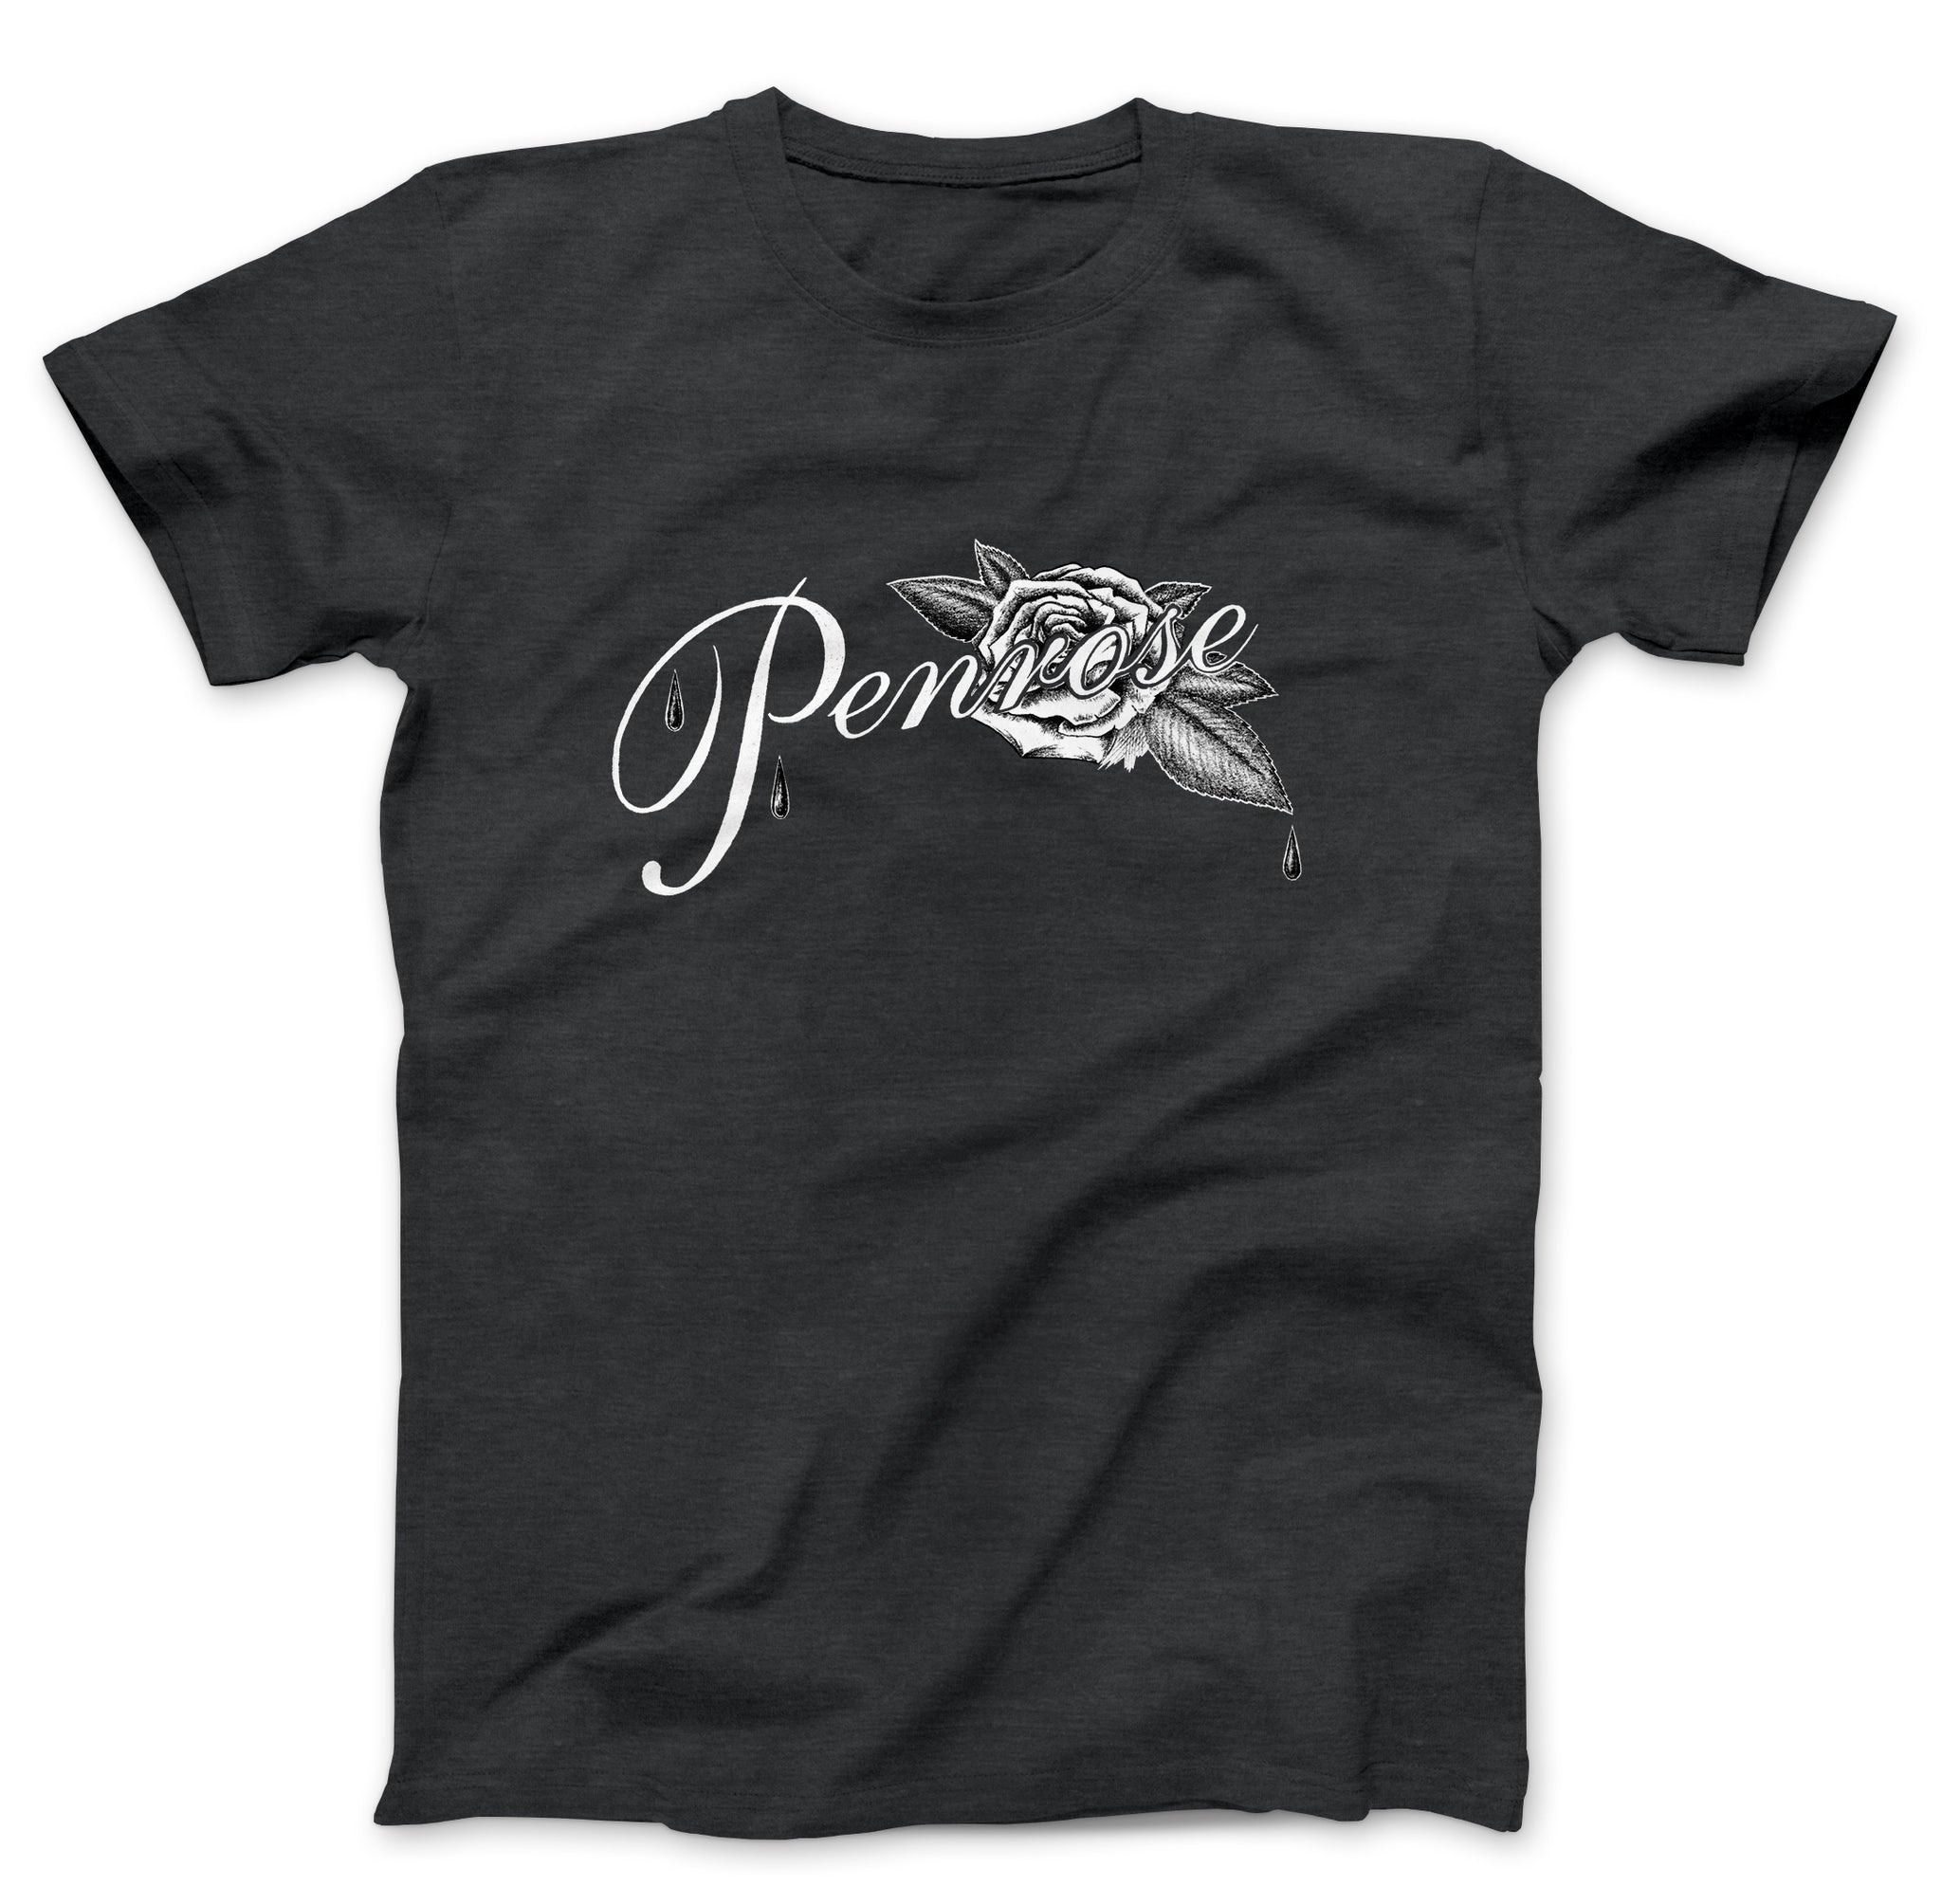 Penrose Records Black T-shirt